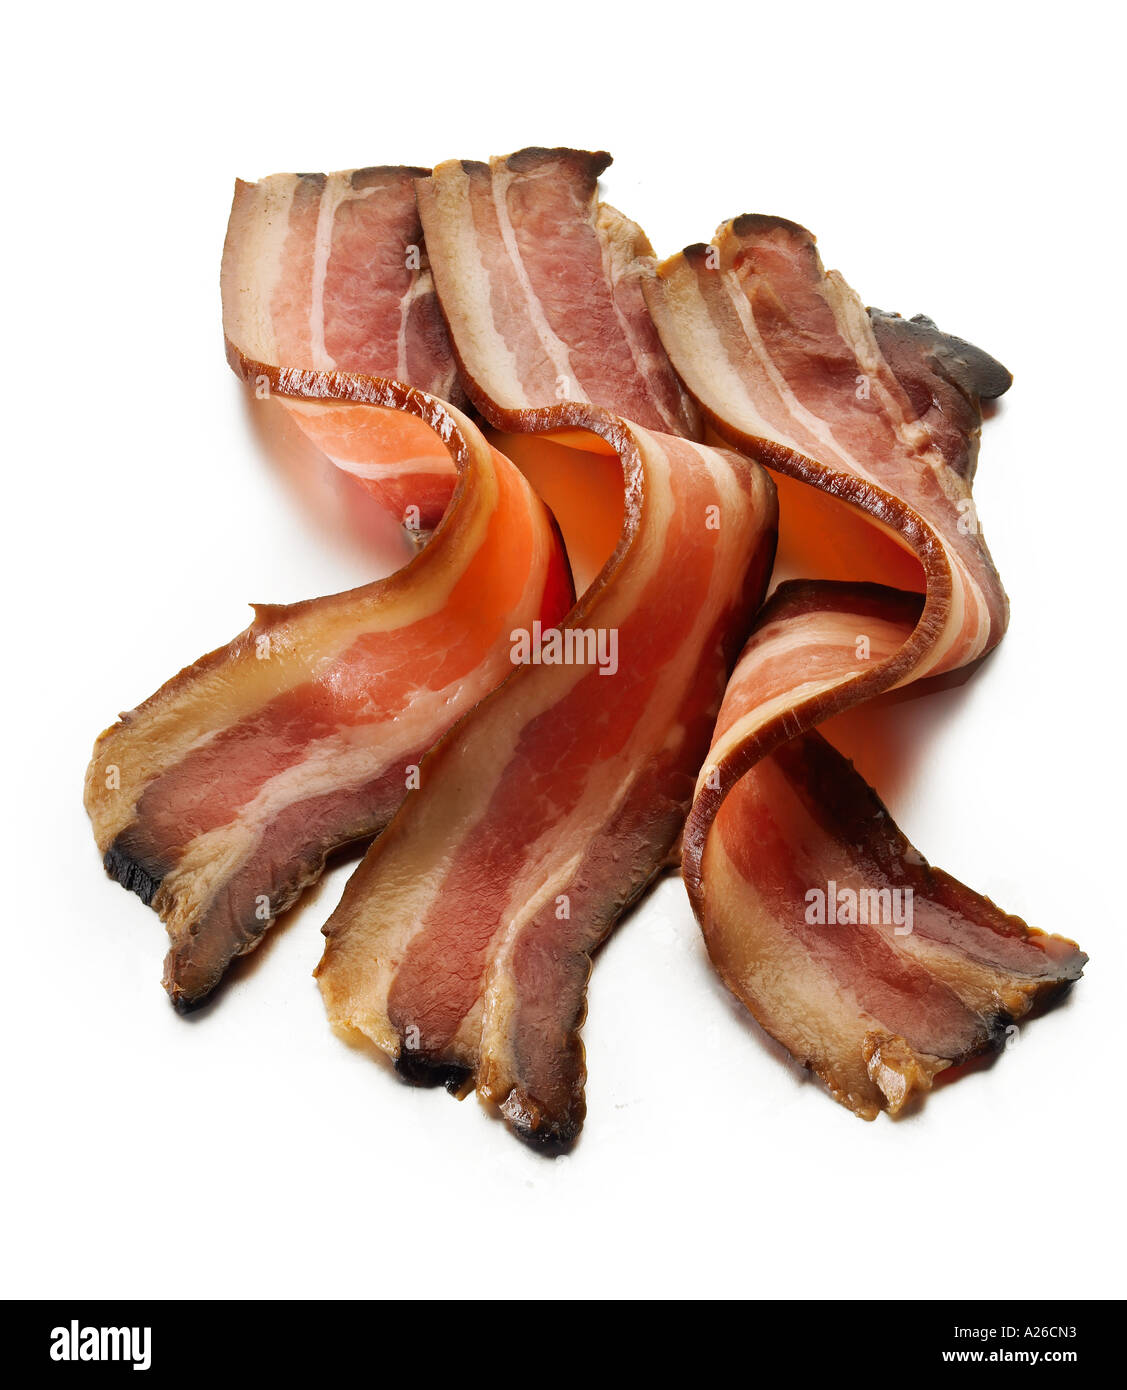 Smoked bacon rashers cured pork streaky fatty fat smoke three Stock Photo